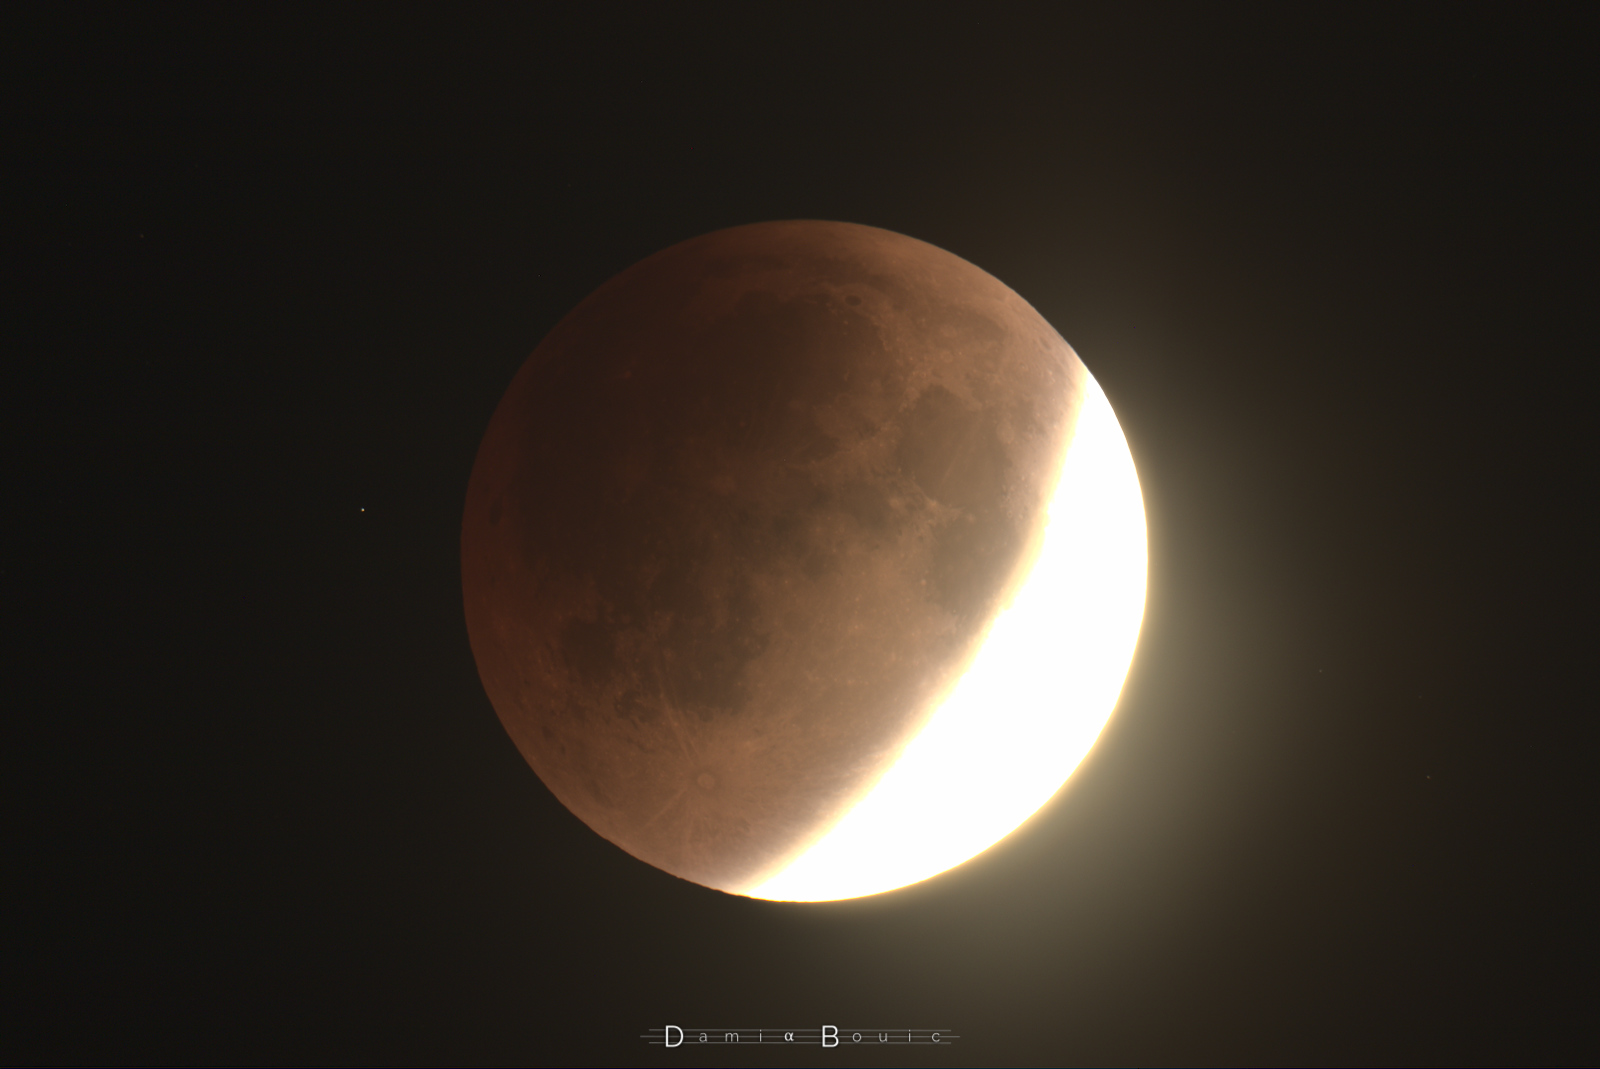 La partie encore dans la lumière solaire sur la Lune est surexposée sur ce clichée, pour mieux mettre en évidence la partie ombrée, qui présente des teintes rouges clairement visibles